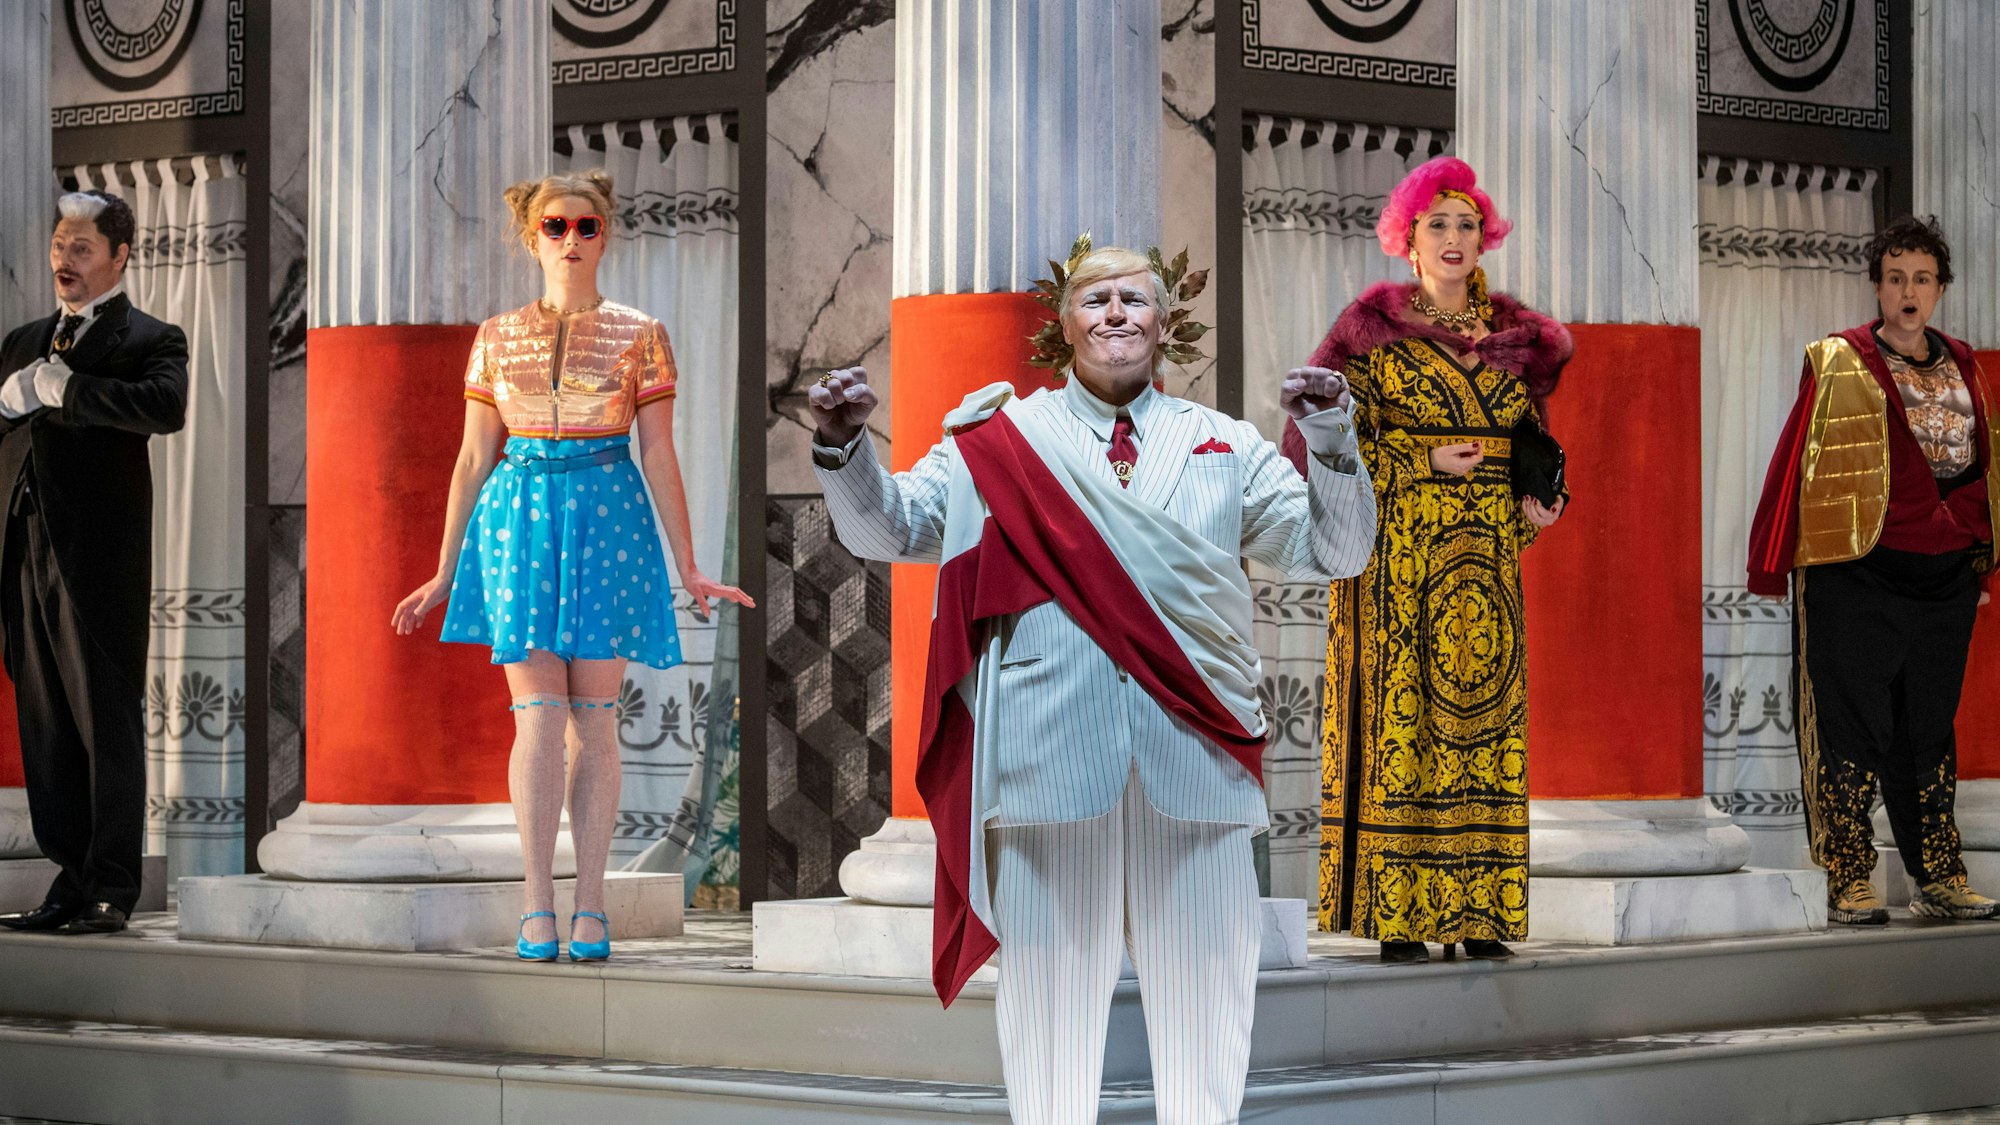 Die Bühne zeigt Säulen, Marmorwände und antike Muster. Kaiser Claudius wird als Trump inszeniert, hat einen weißen Anzug mit roter Schärpe an, aber einen goldenen Lorbeerkranz auf dem Haupt.